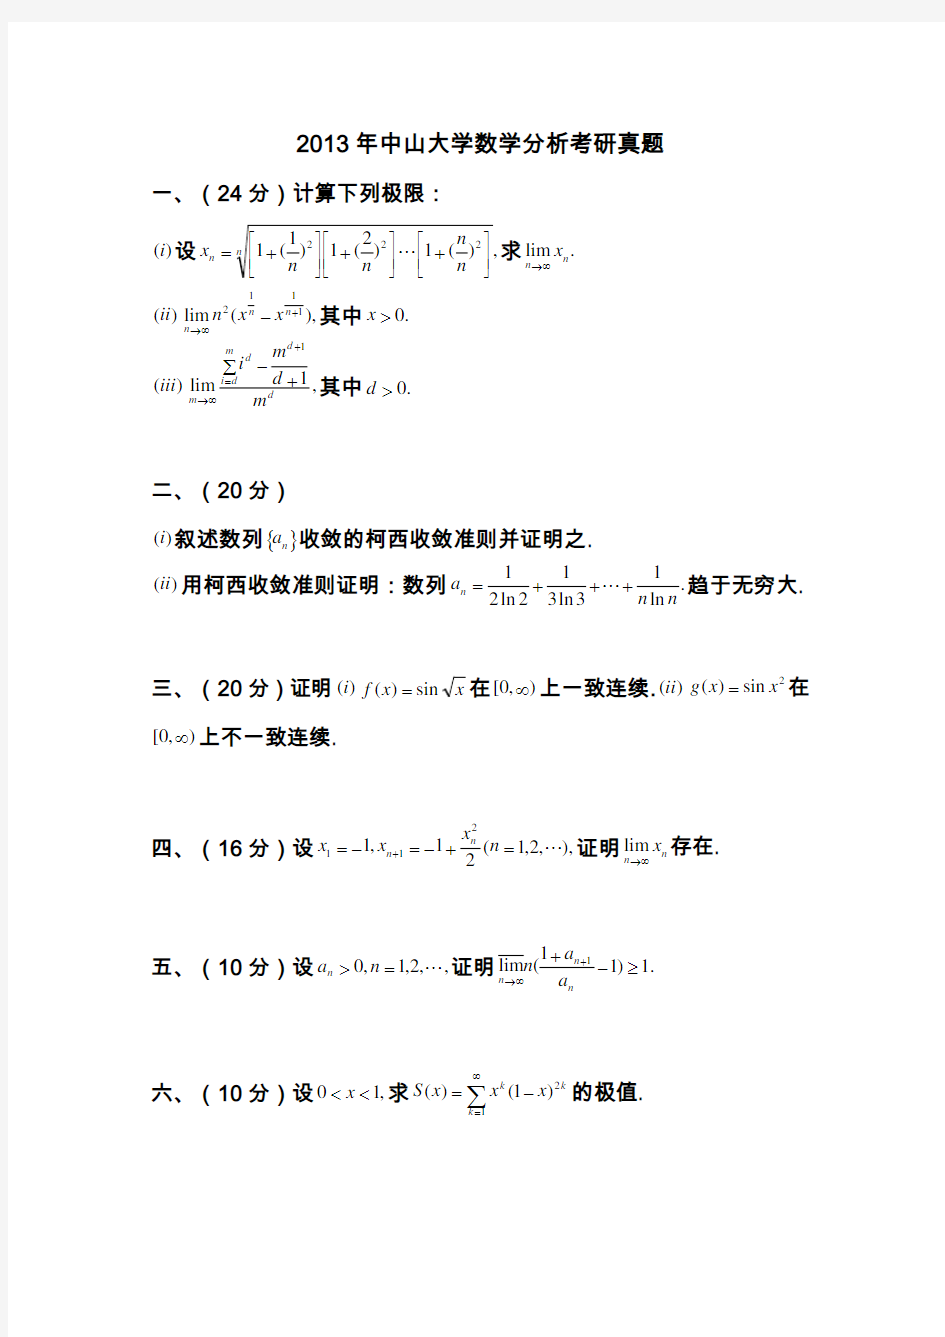 2004~2013中山大学数学分析、高等代数考研试题